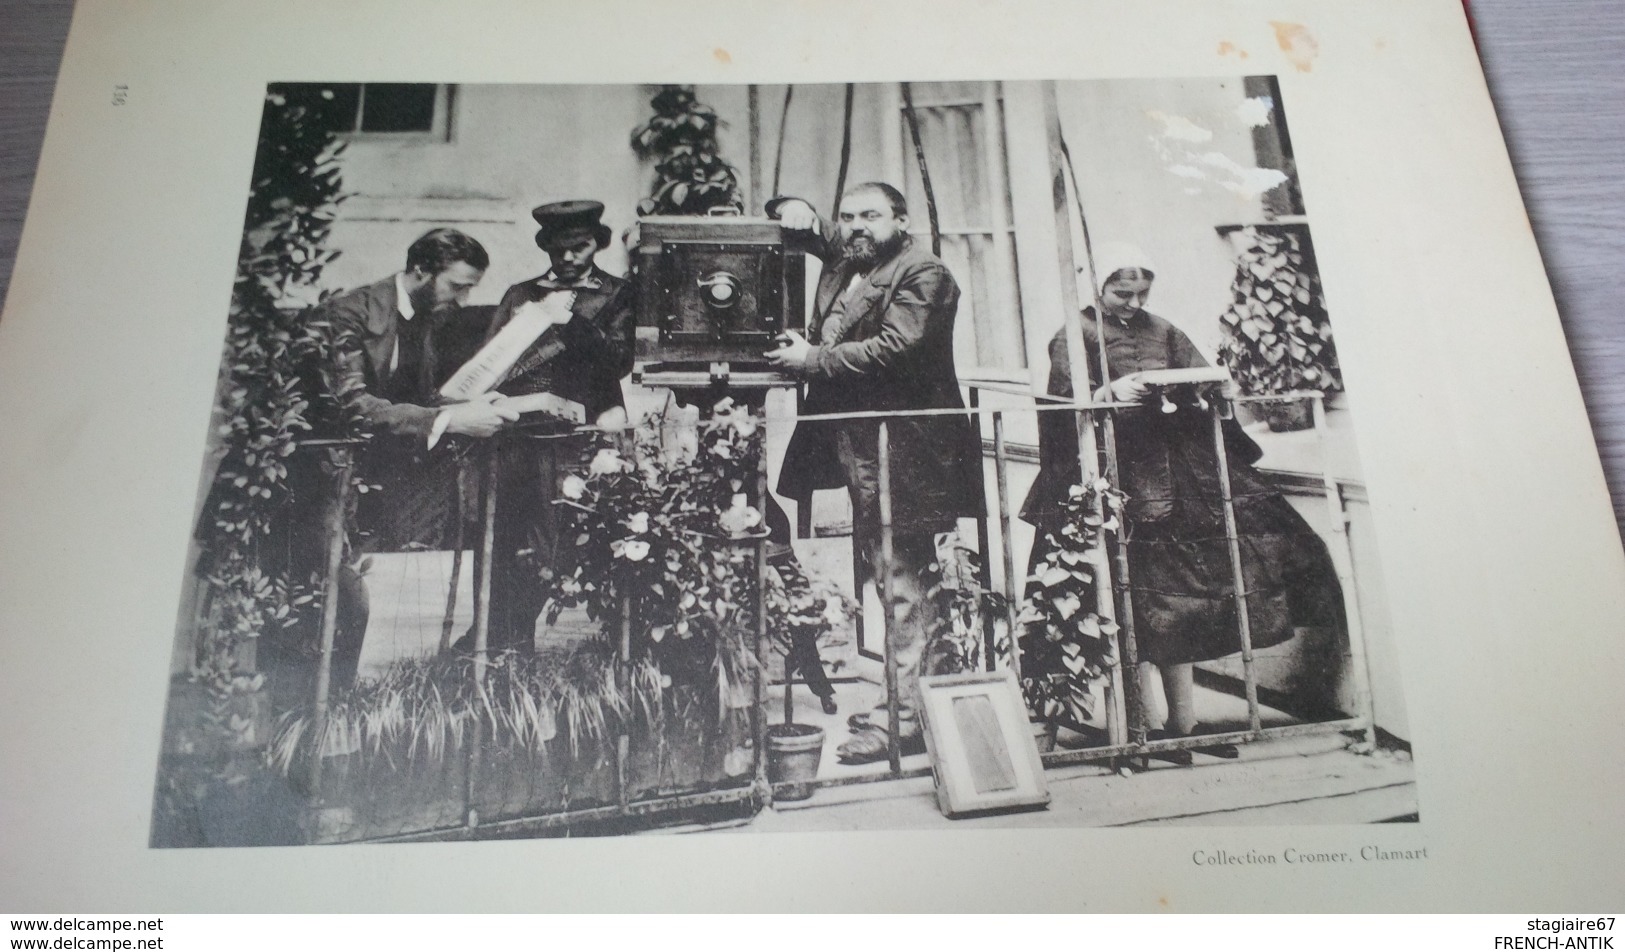 LIVRE VIELLE PHOTOGRAPHIE EDITION PARIS HENRI LEFEBRE 1935 NADAR KORTY CROMER DANHELOVSKY GUERRE DE SECESSION WASHINGTON